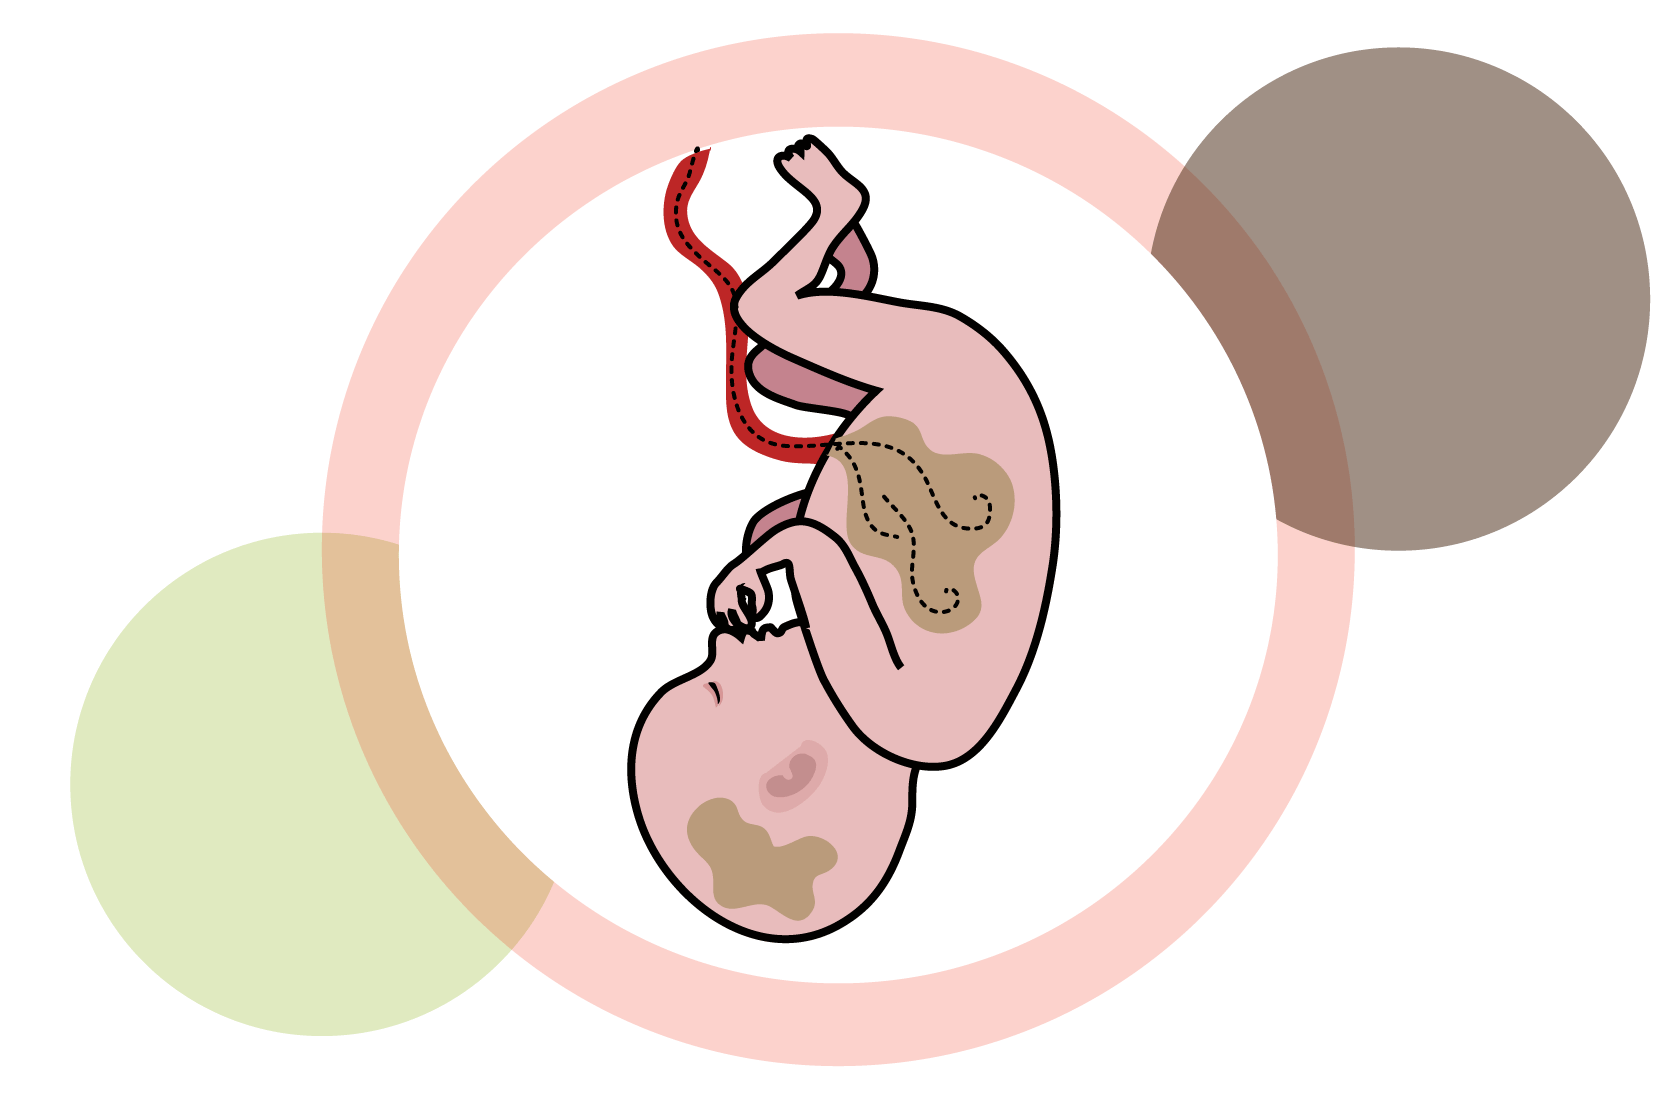 Ett foster med bruna fläckar i magen och huvudet som symboliserar giftiga ämnen. Illustration.